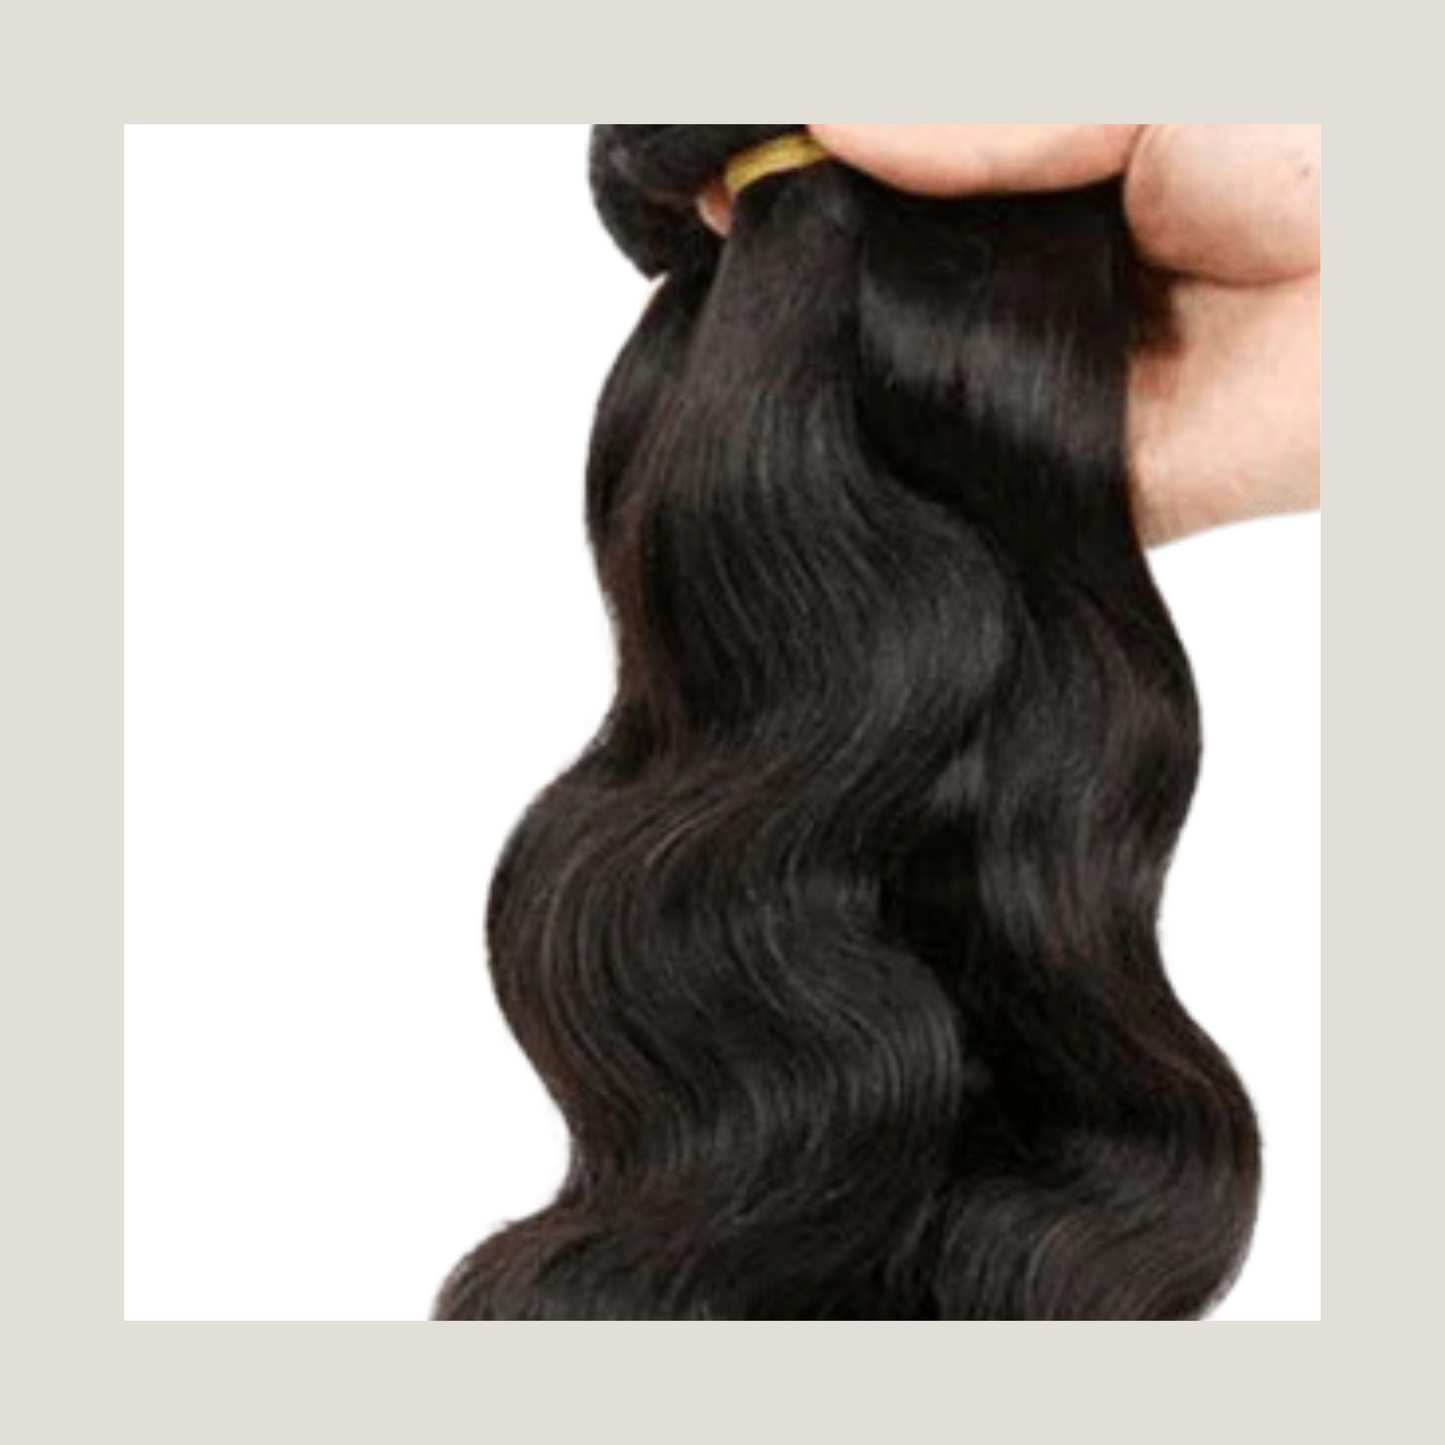 3 paquets 100% trames de cheveux humains brésiliens, tissages de cheveux vierges non transformés extensions de cheveux Bodywave